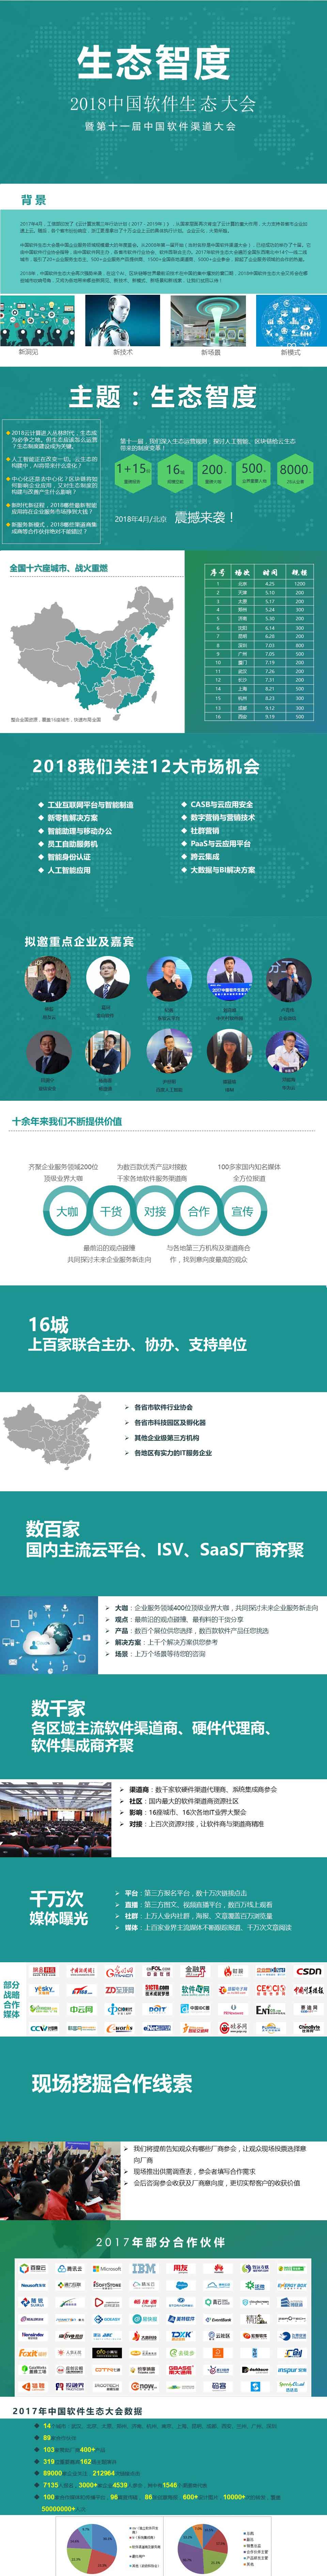 2018中国软件生态大会暨第十一届中国渠道大会北京站